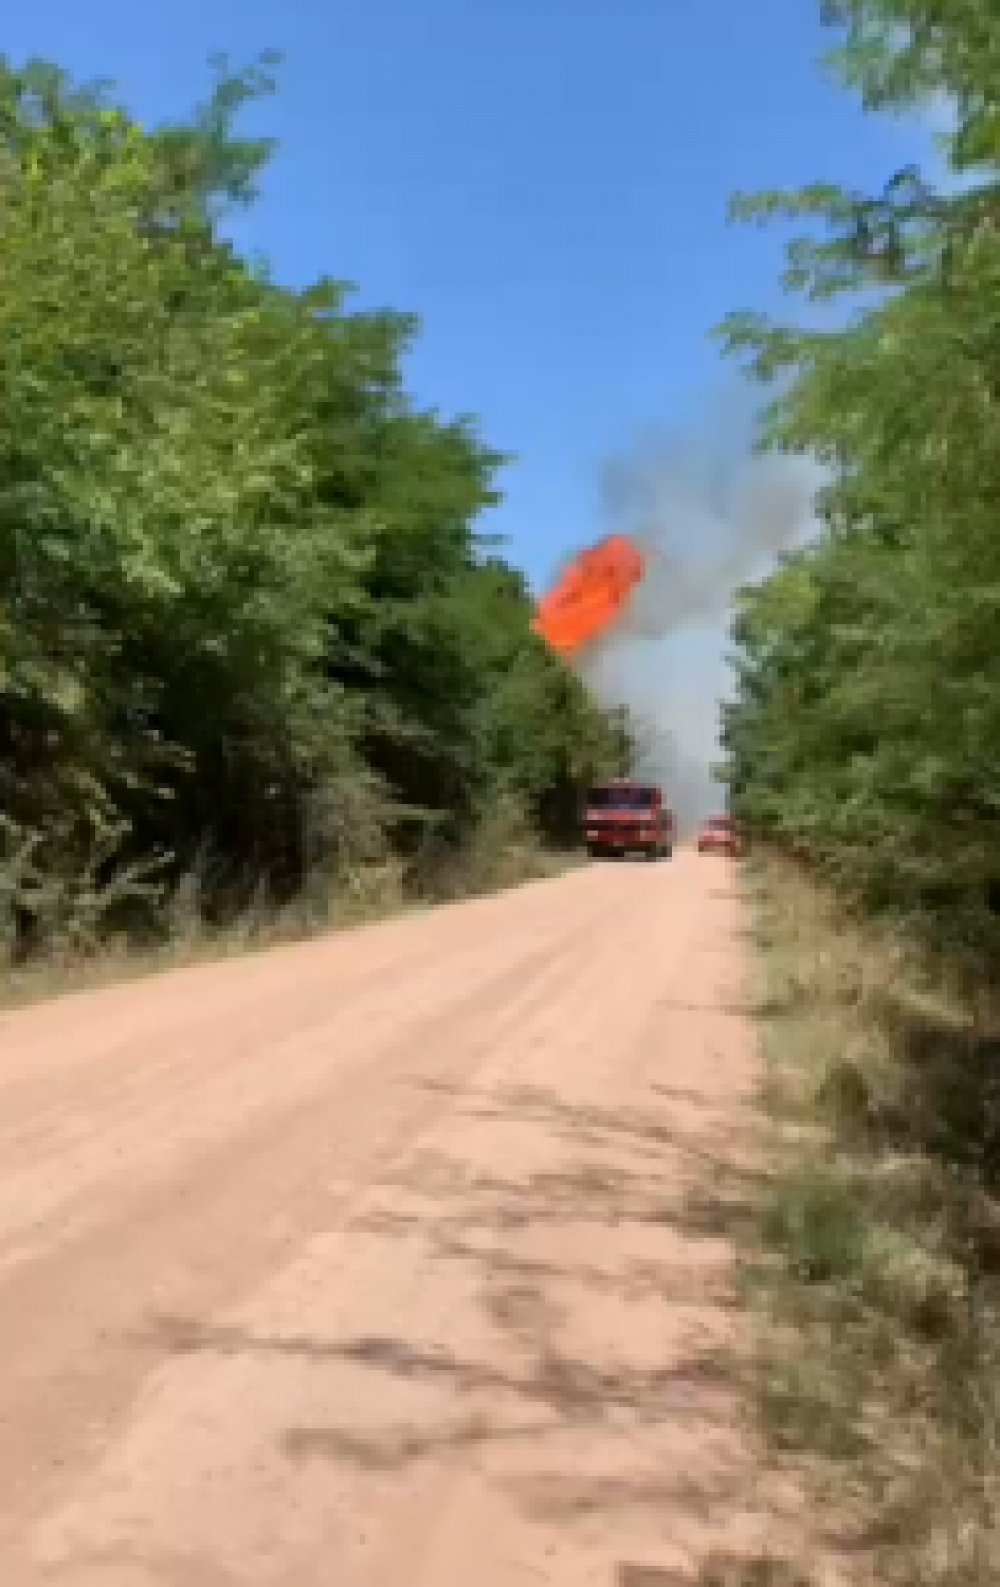 Incendio forestal en empalme Lobos, afectó varios árboles cerca del tendido eléctrico